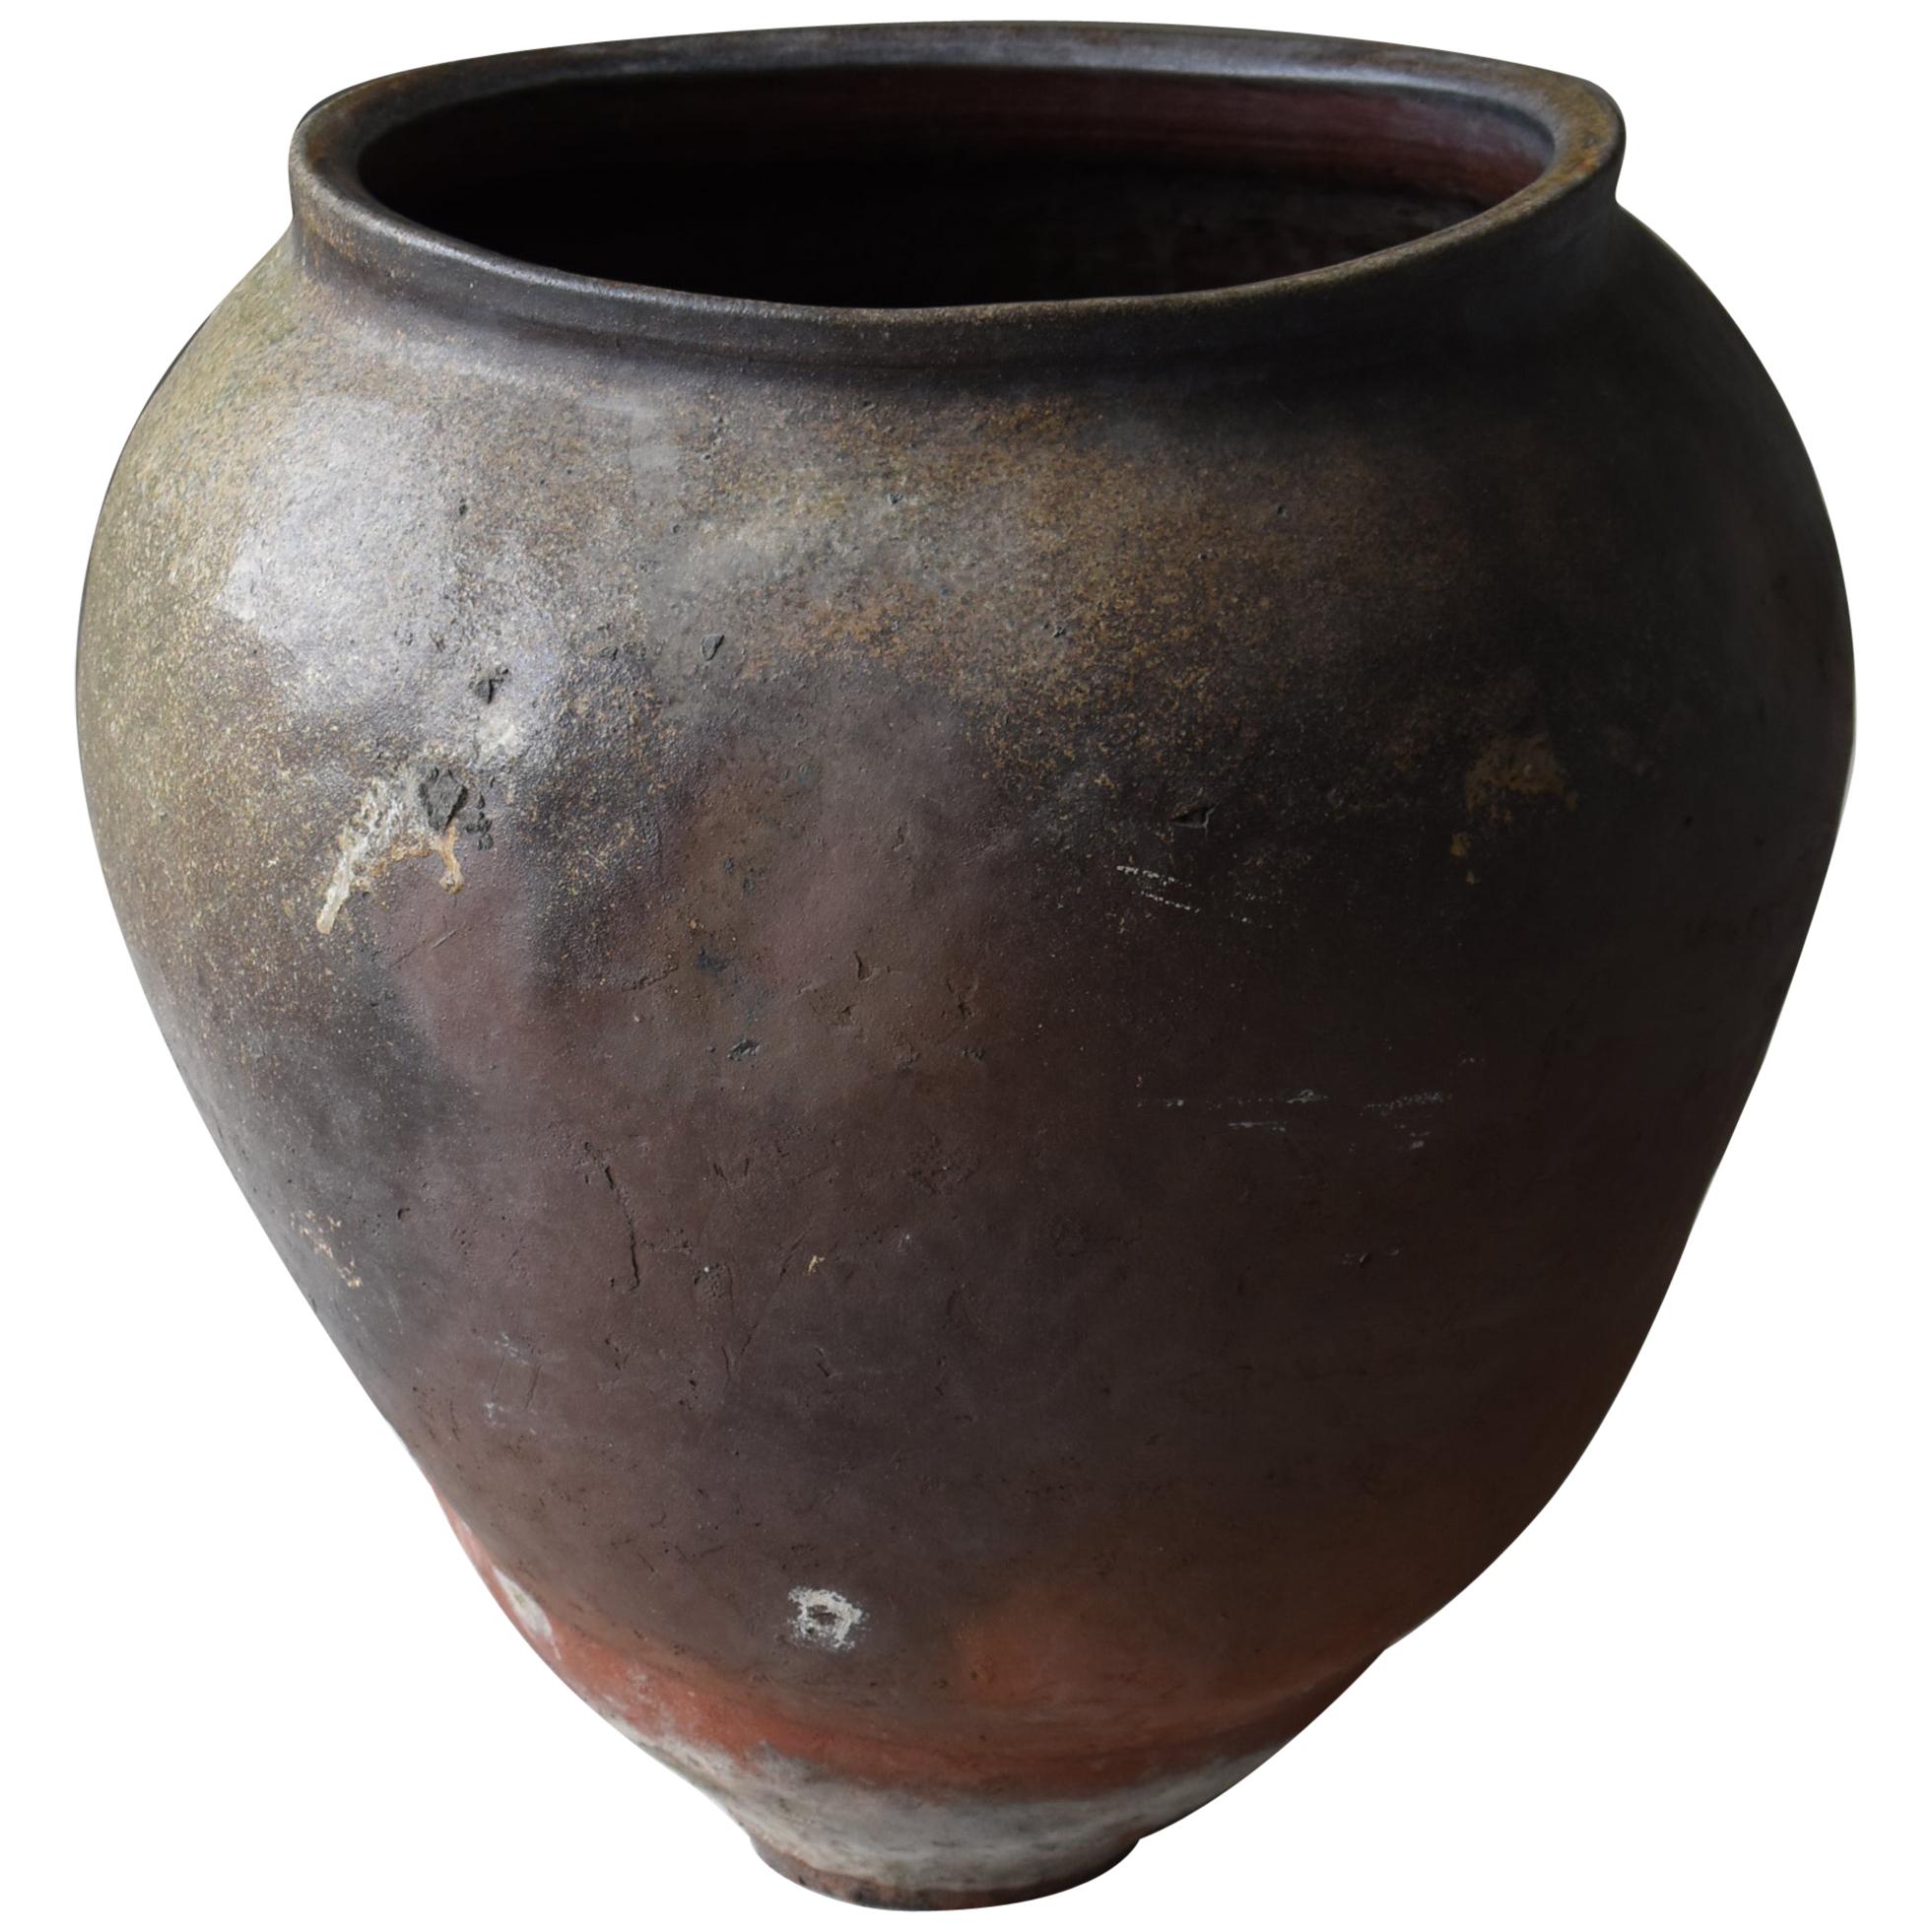 Japanese Old Huge Pottery 1700s-1800s/Antique Flower Vase Vessel Jar Tsubo Edo